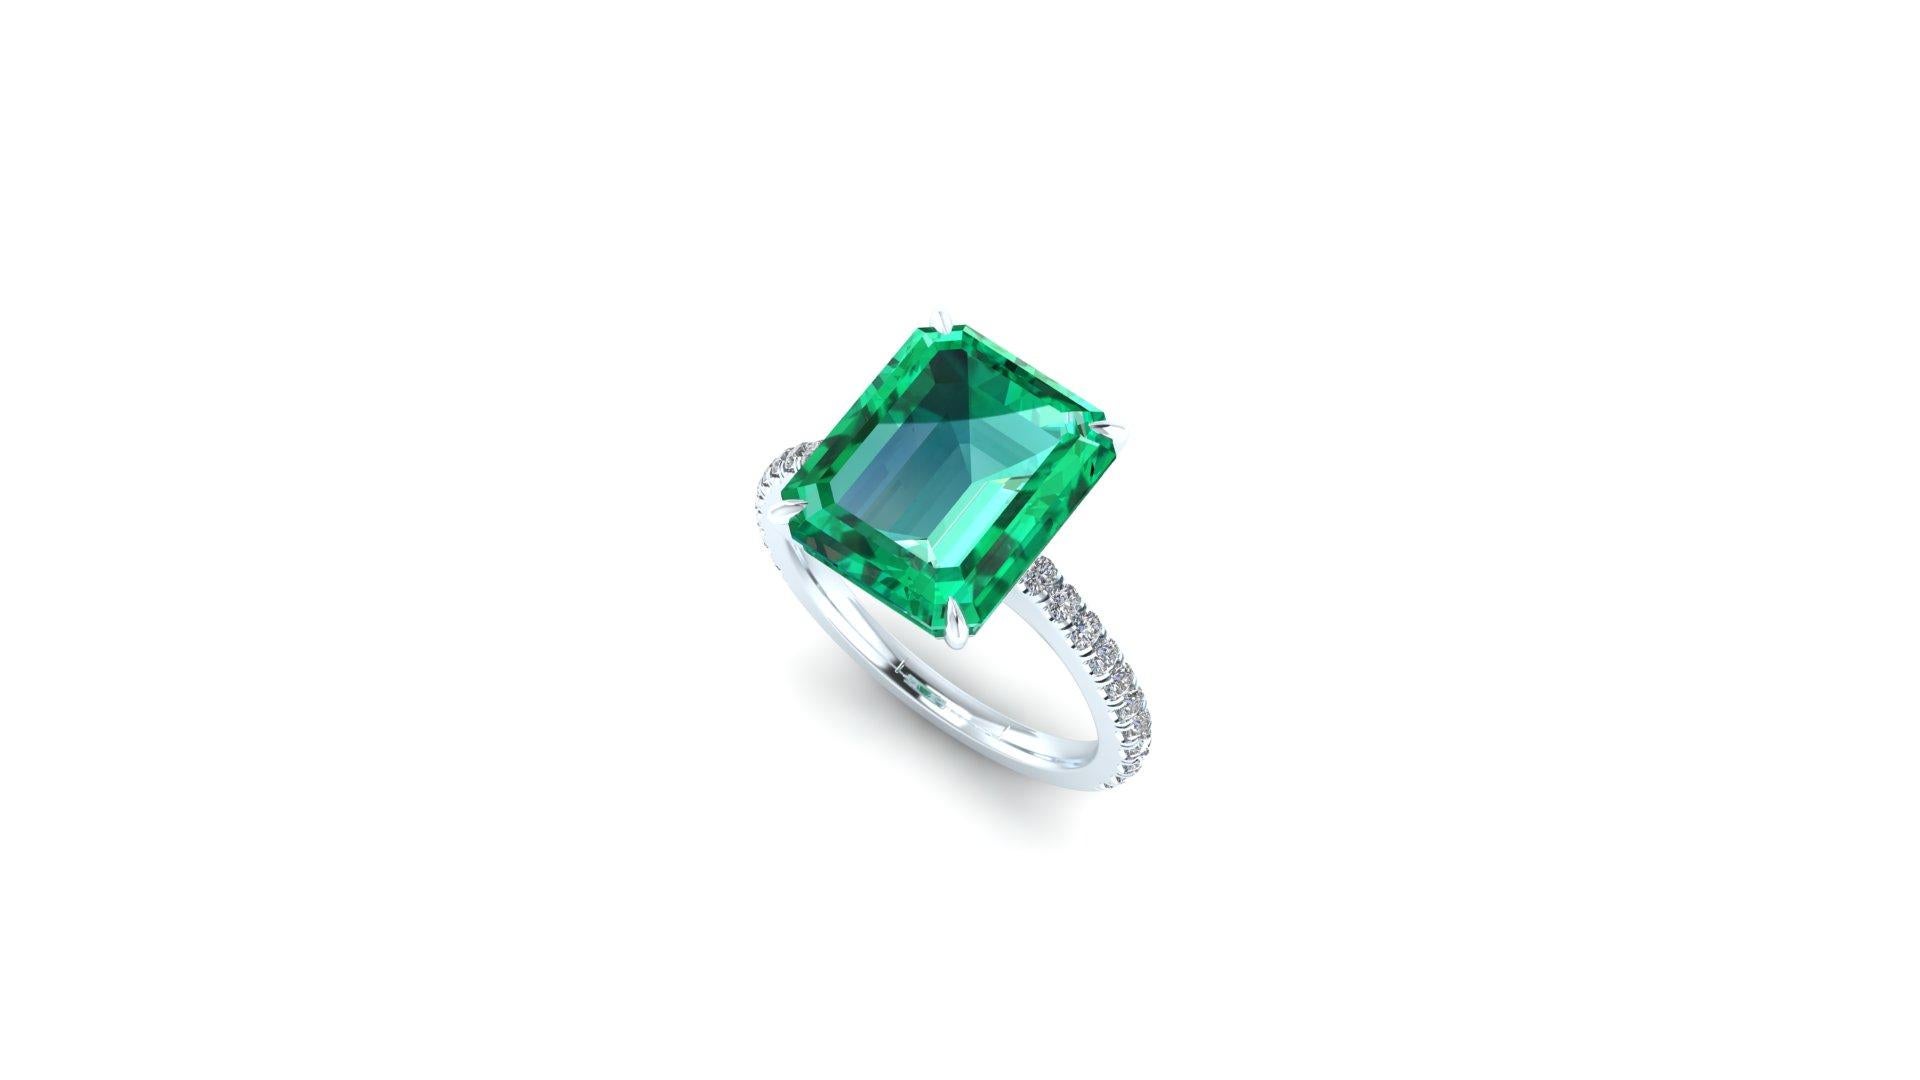 5.75 ct Smaragd, GIA zertifiziert atemberaubend sauberes Mineral, mit nur wenigen natürlichen Einschlüssen typisch für den Smaragd. 
Pave